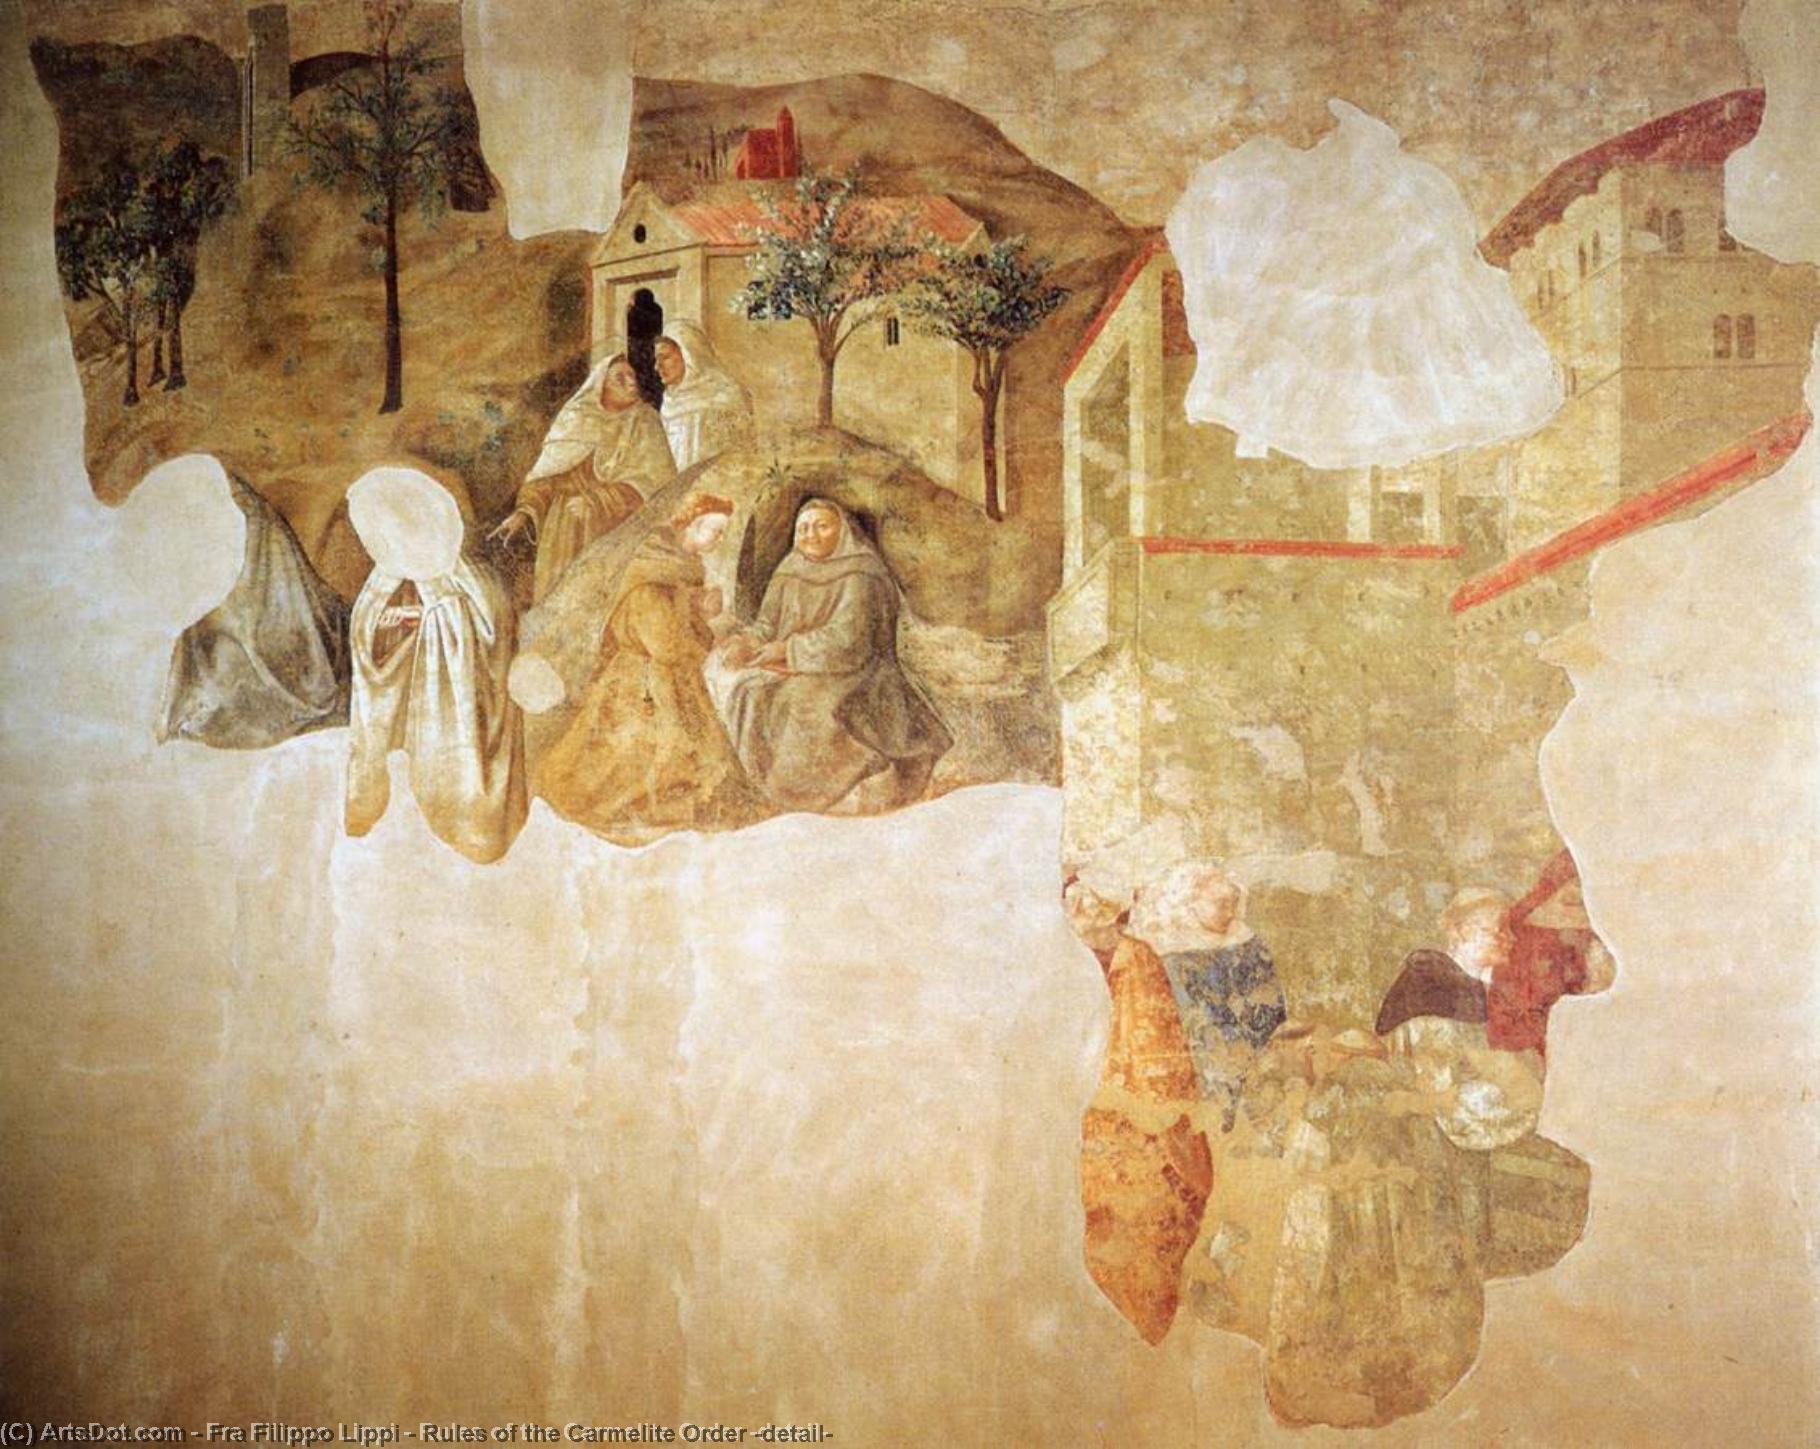 WikiOO.org – 美術百科全書 - 繪畫，作品 Fra Filippo Lippi - 规则 的  的  加尔默罗  为了  详细